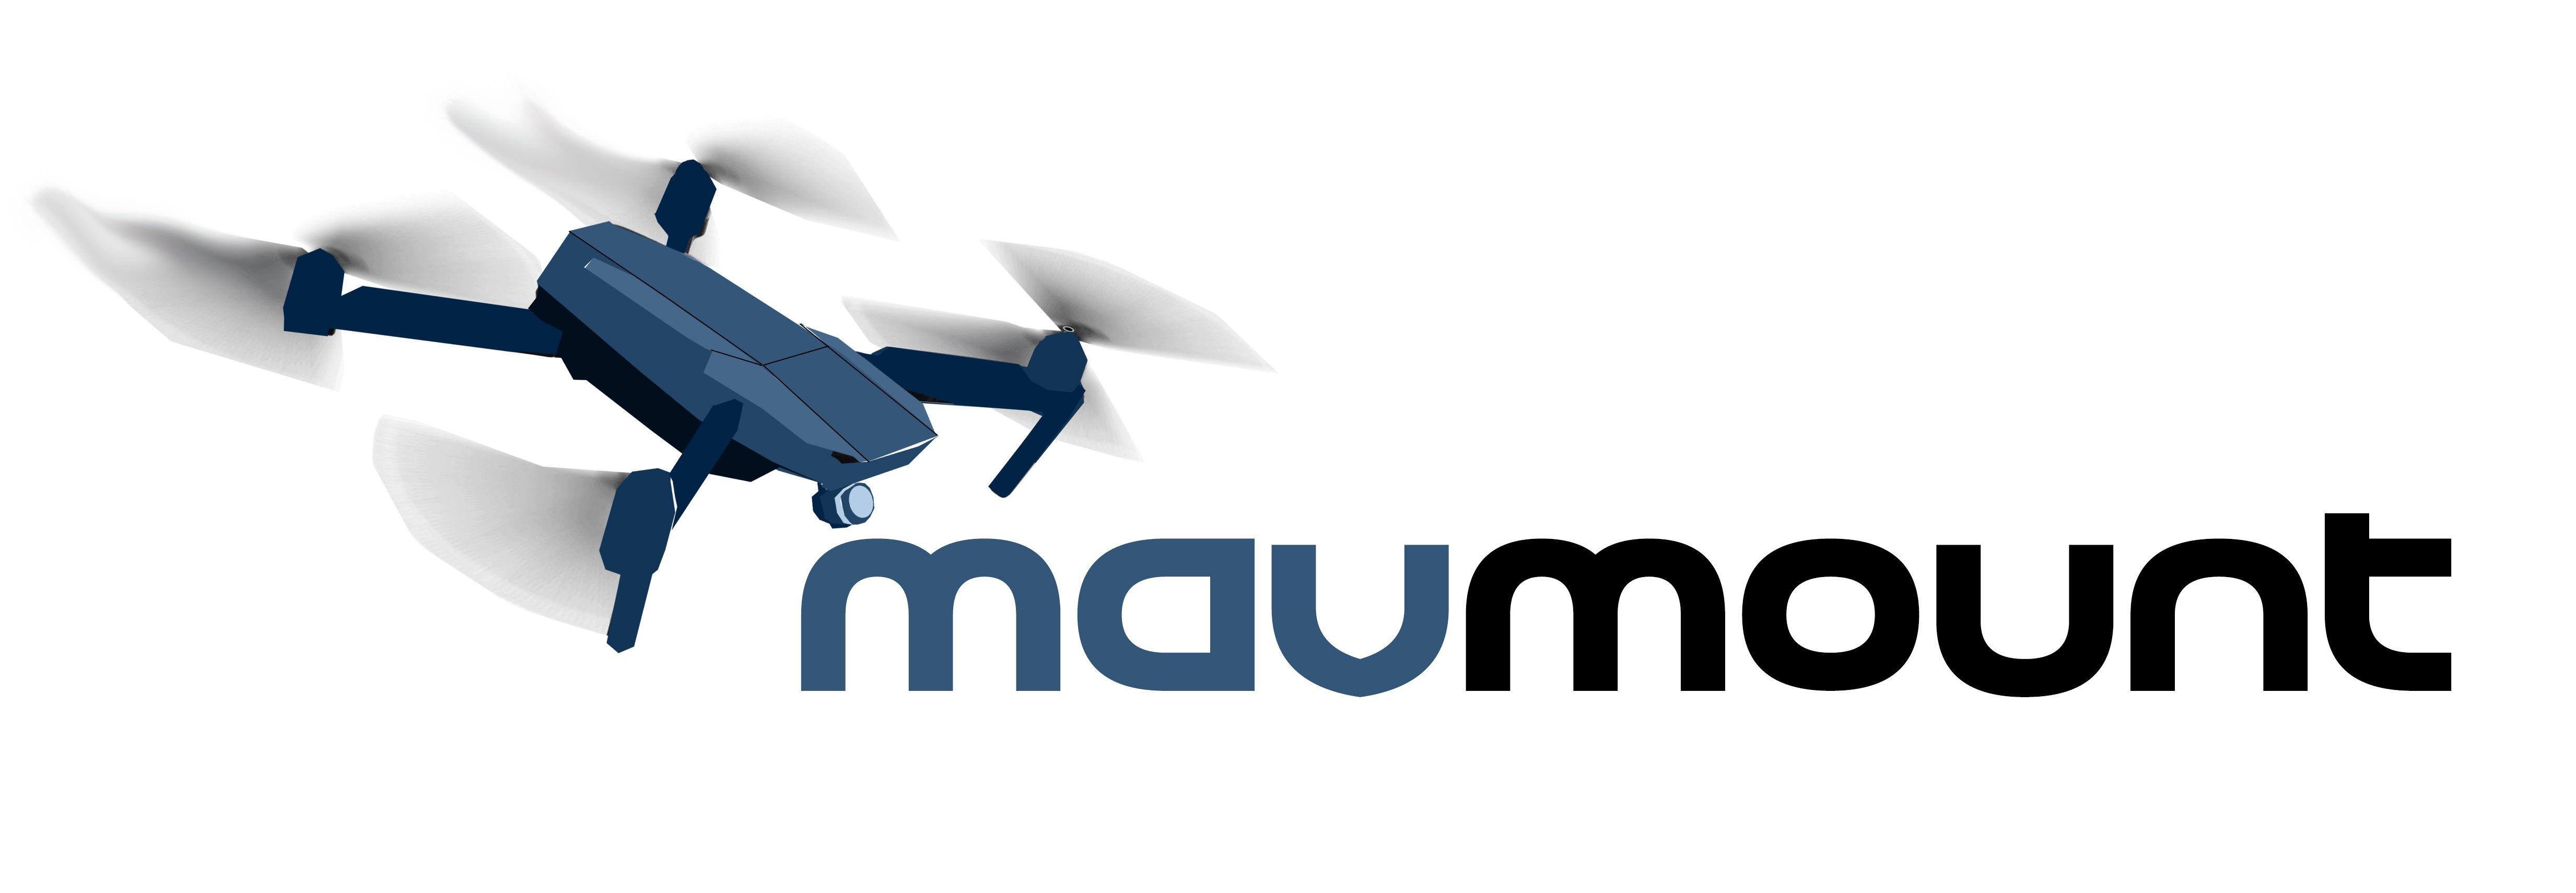 Mavic Logo - Gunmetal Grey MavMount 3.0 DJI Mavic Mavic Zoom, Mavic Pro, AIR